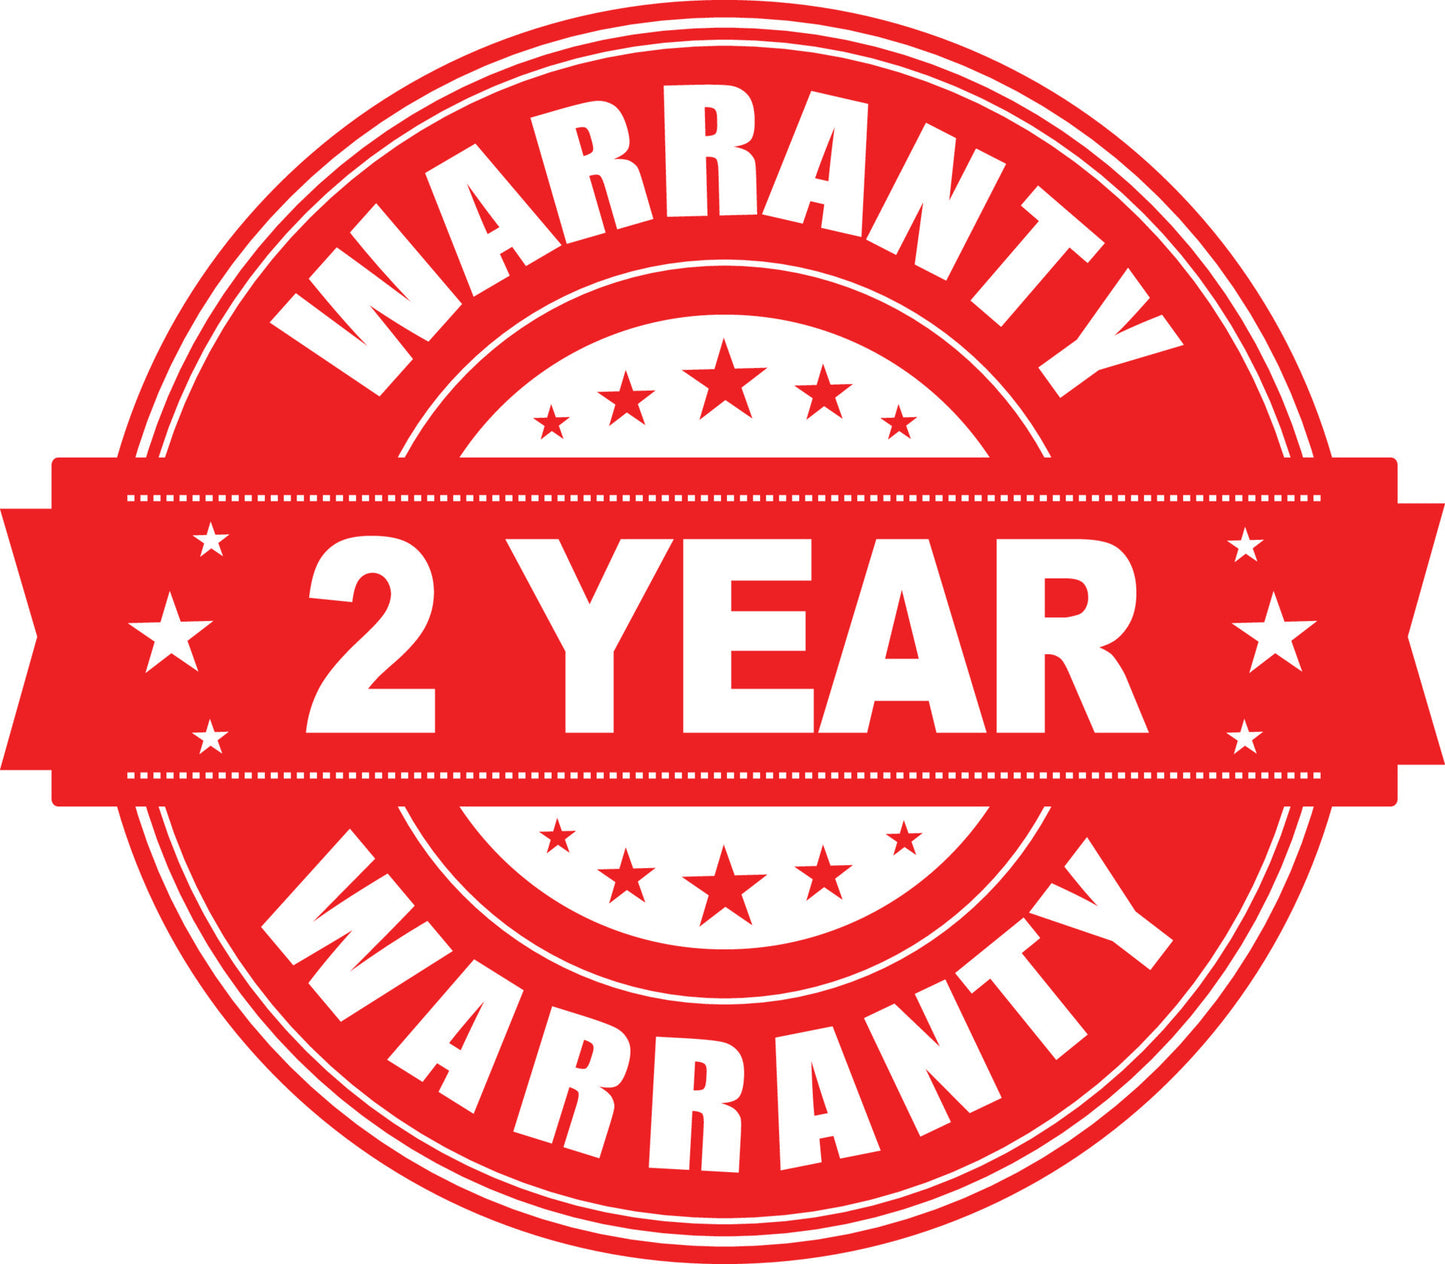 Additional 2 Year Warranty